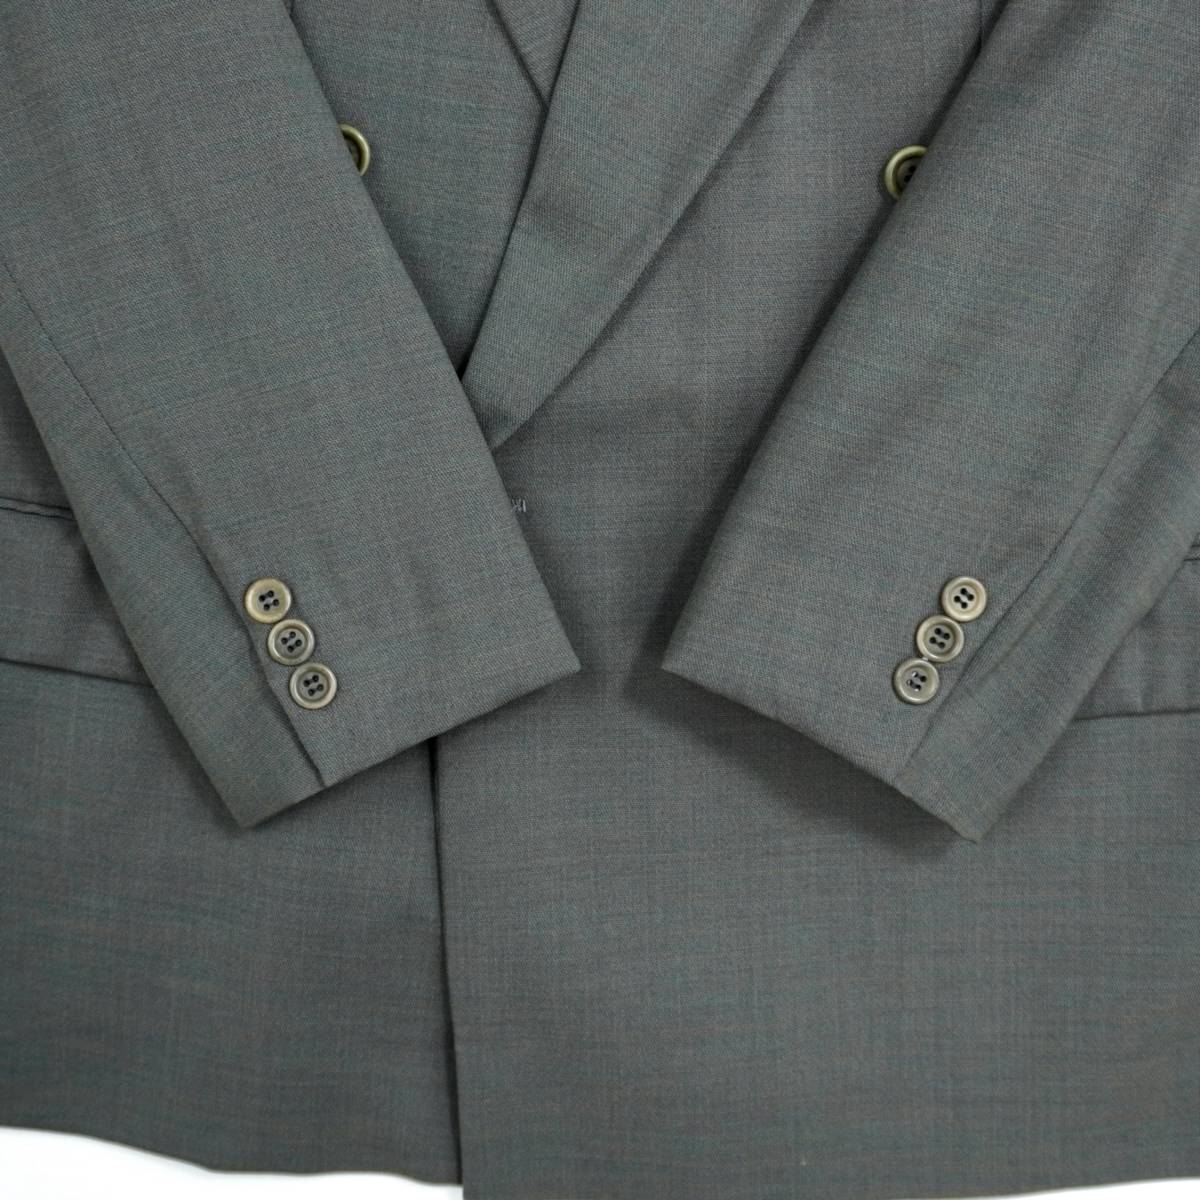 HUGO BOSS AL CAPONE Tailored Jacket 1990s 304049 ヒューゴボス アルカポネ ダブル  テーラードジャケット スーツ ユニオンメイド